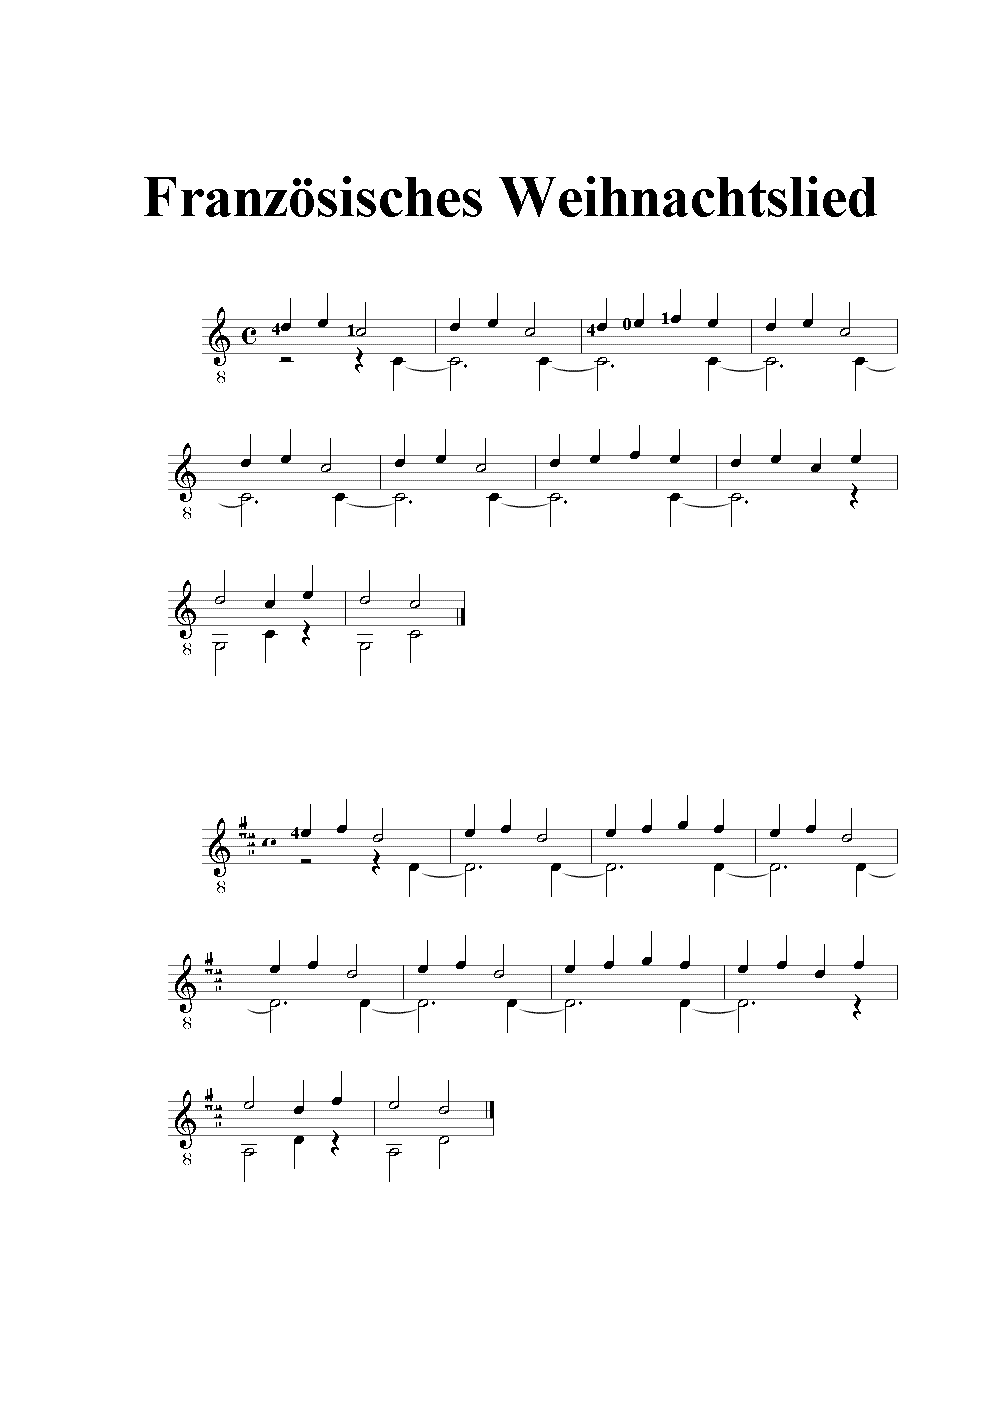 Franzoesisches Weihnachtslied-1.gif